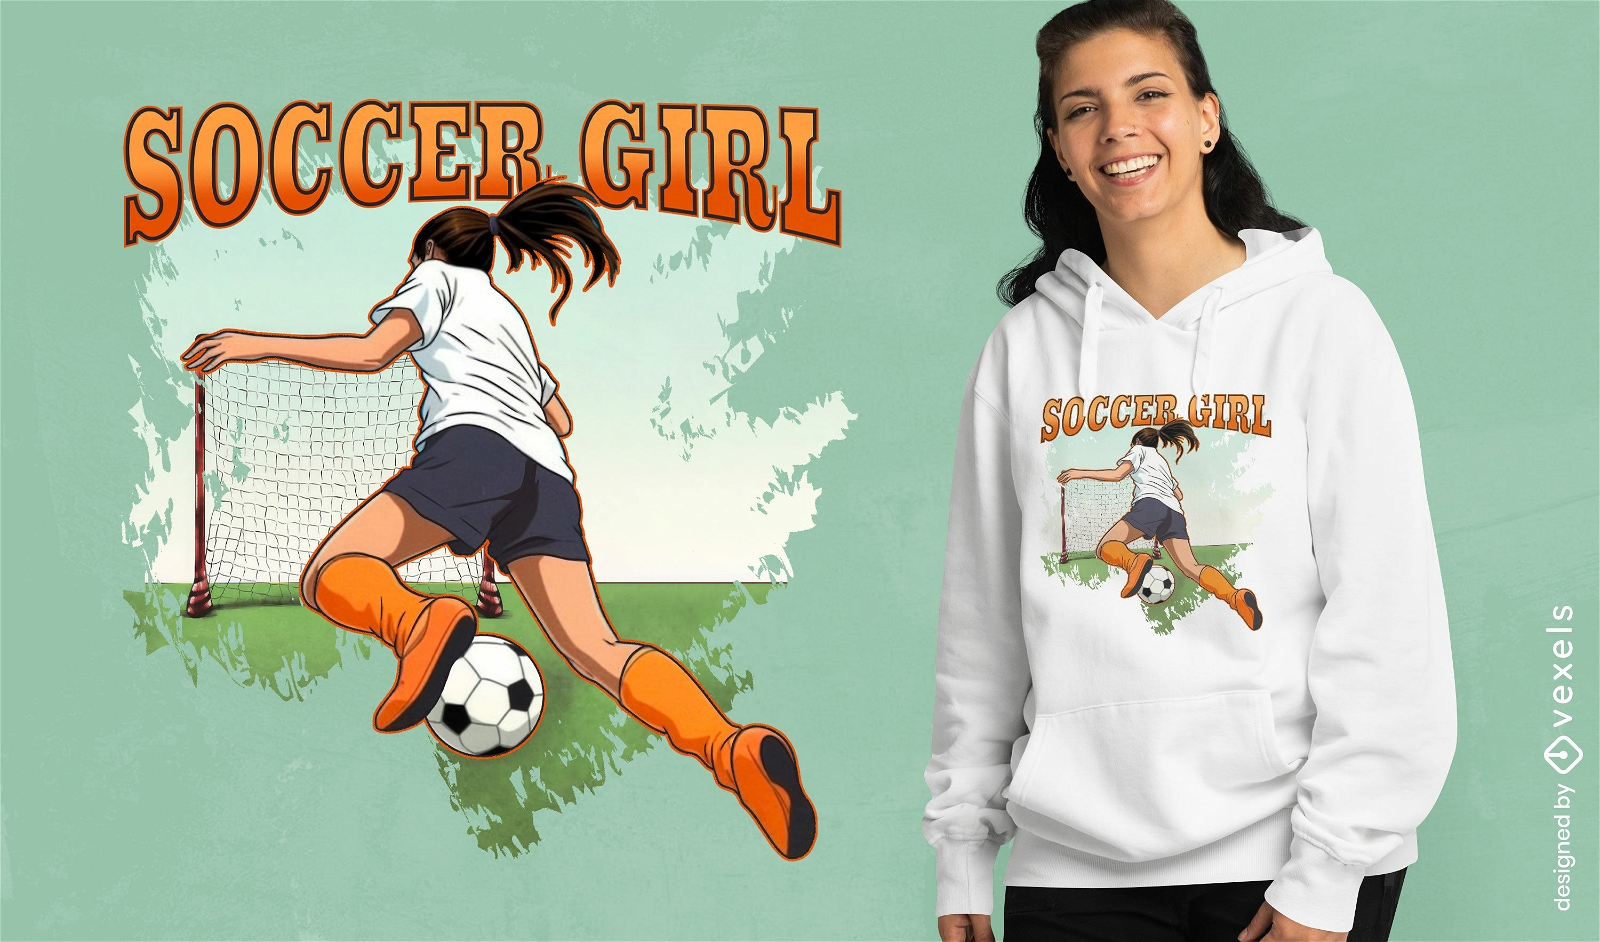 Soccer girl action t-shirt design